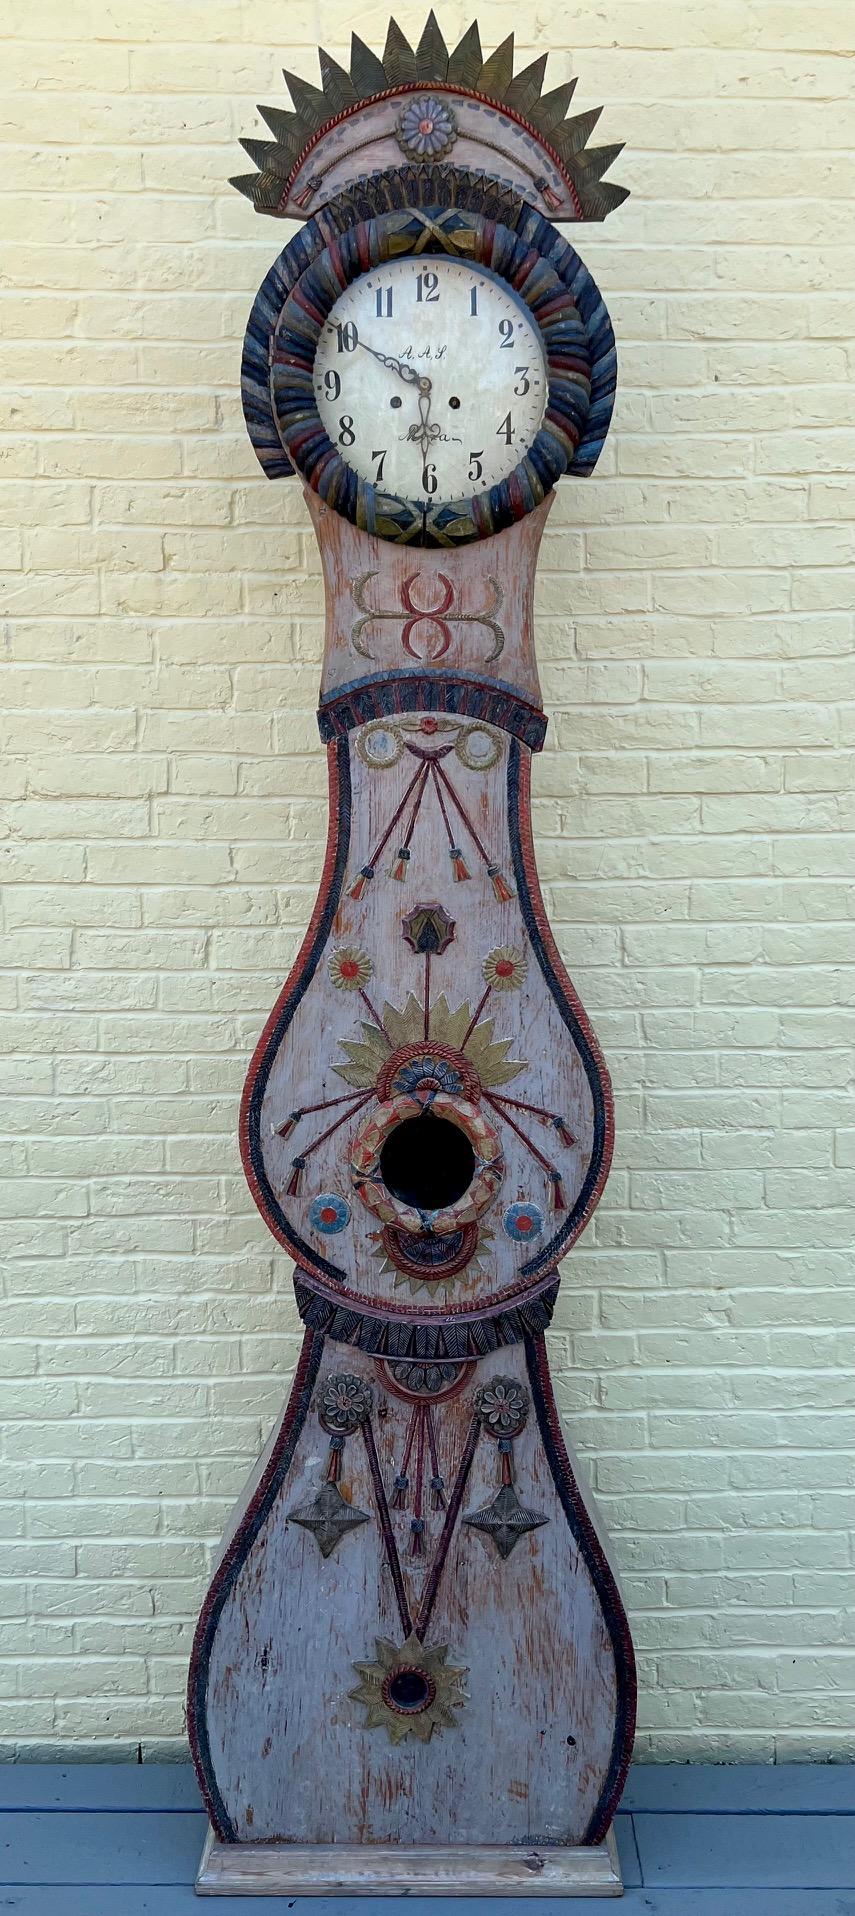 L'un des plus beaux exemples signés d'une horloge suédoise à long boîtier Mora de la fin du XVIIIe siècle que nous ayons vu. La sculpture décorative est exquise et la peinture est ancienne et probablement d'origine. Le mouvement fonctionne, mais